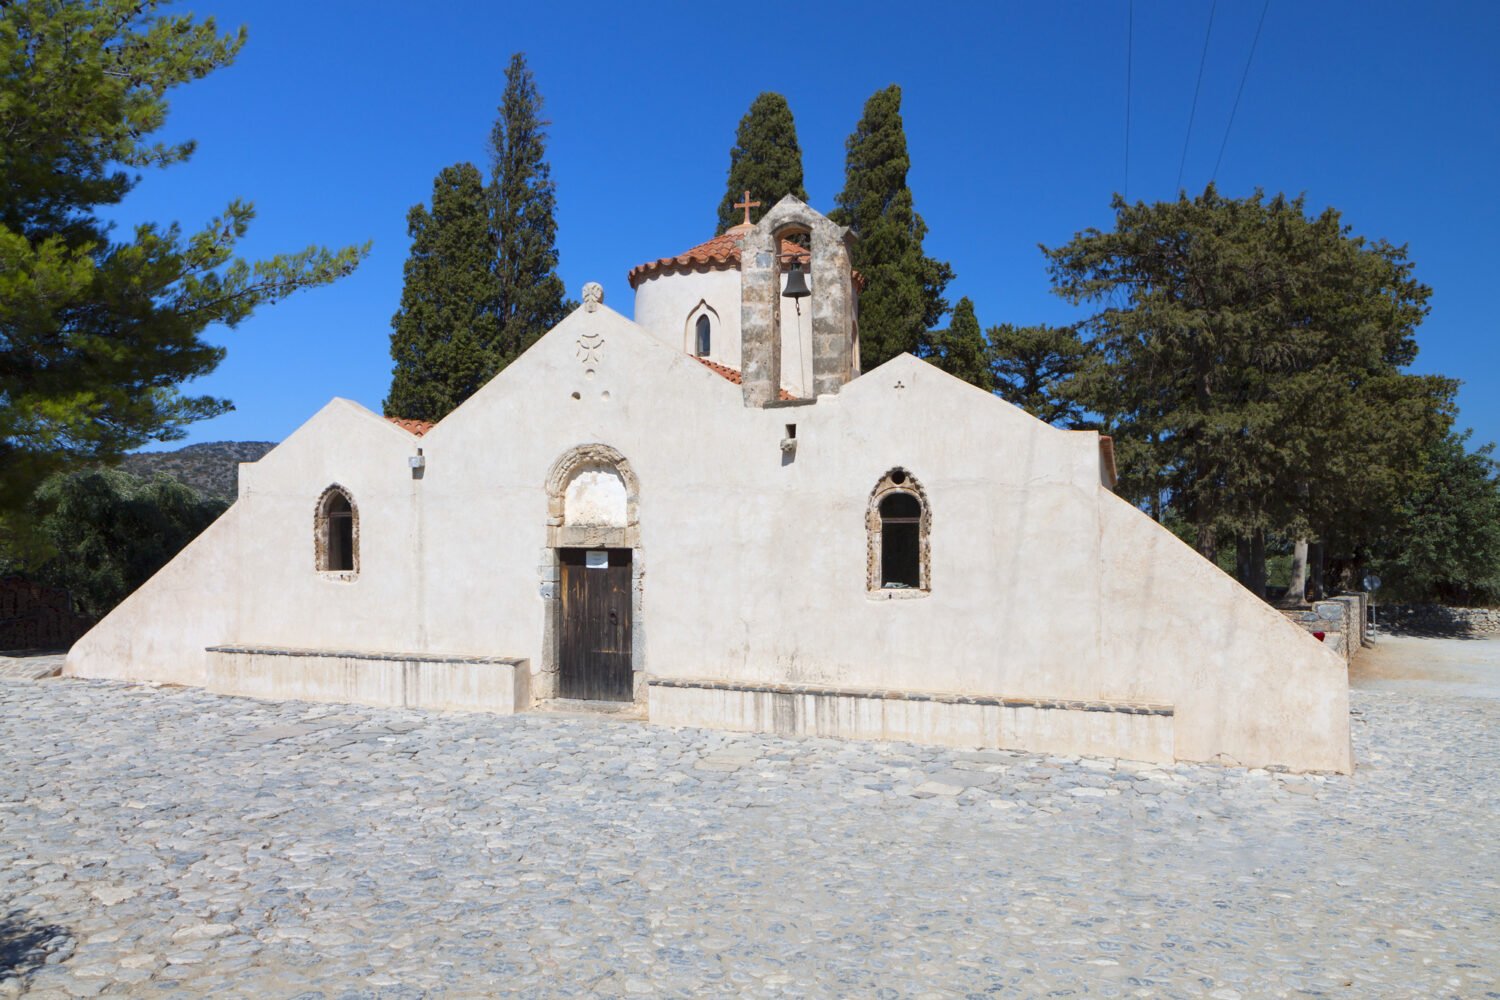 Byzantine church kritsa
Panagia Kera